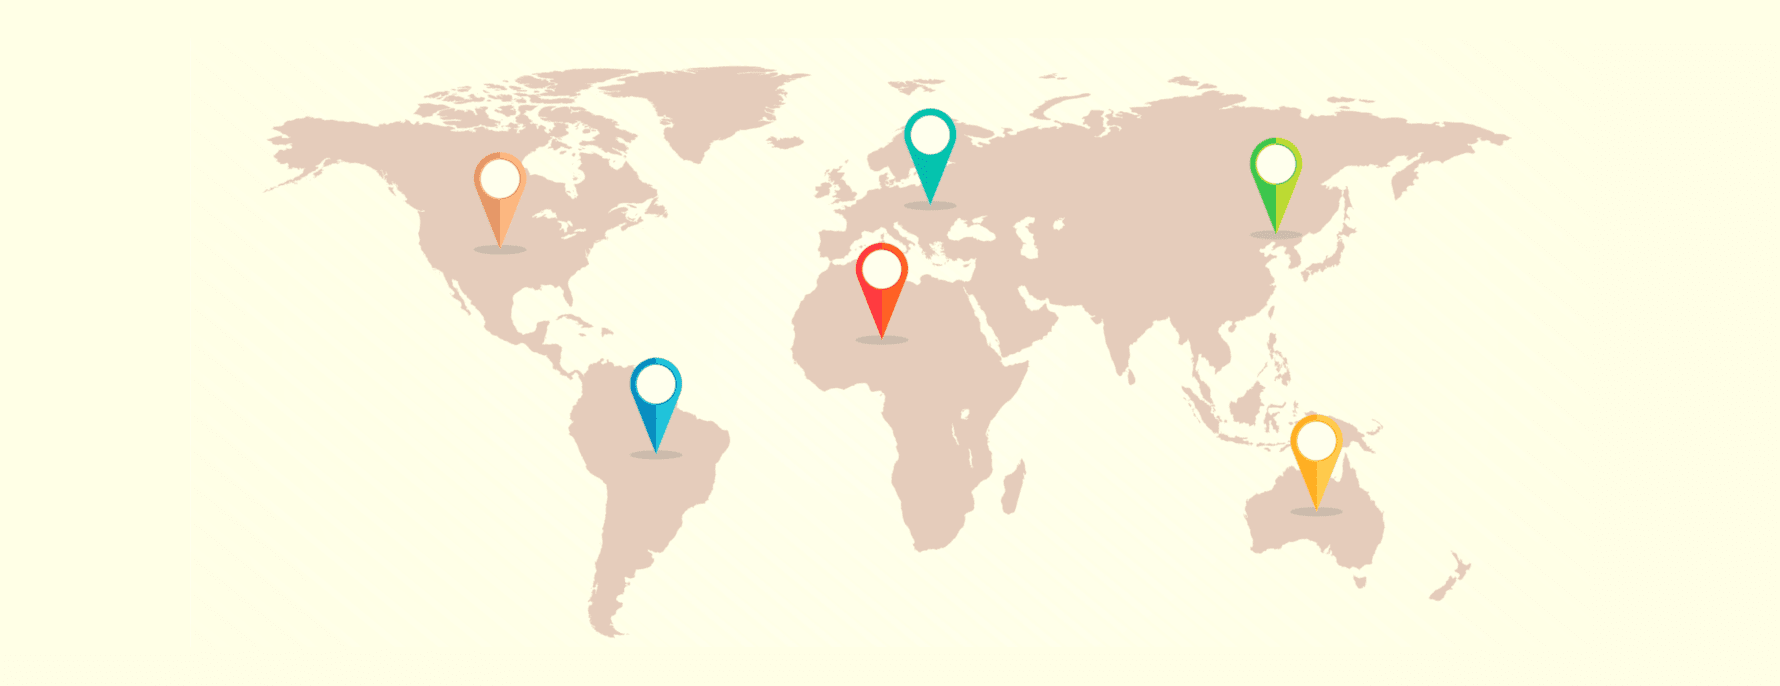 แผนที่โลกแสดงเขตอำนาจศาล VPN ต่างๆ